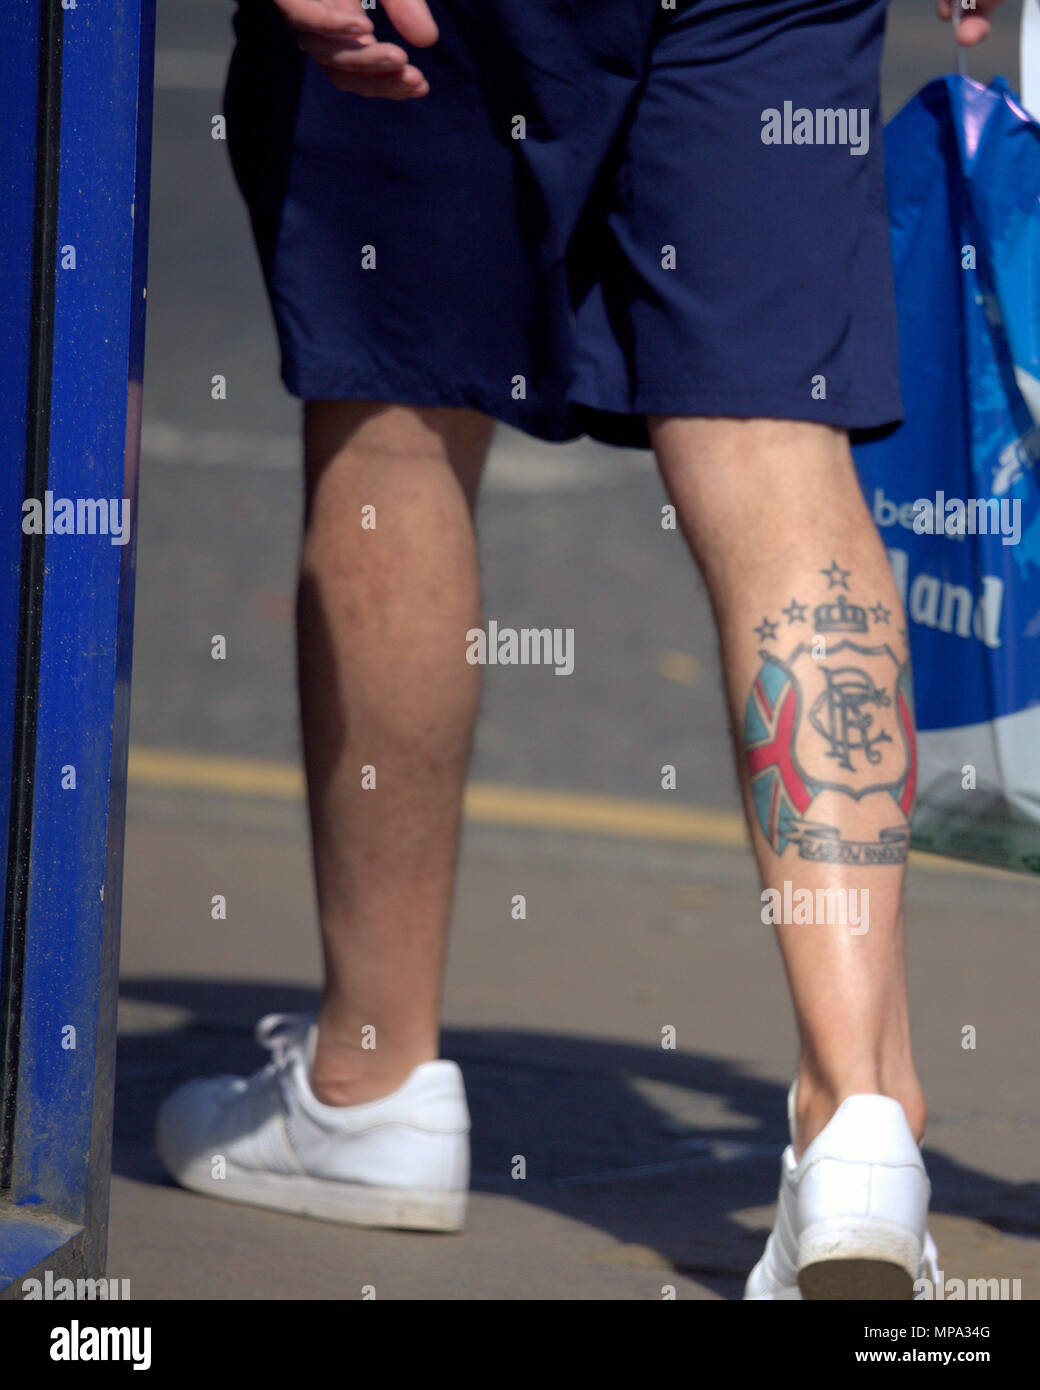 El Glasgow Rangers FC club de fútbol aficionado al fútbol club la pierna tatuada tatuaje distintivo Foto de stock